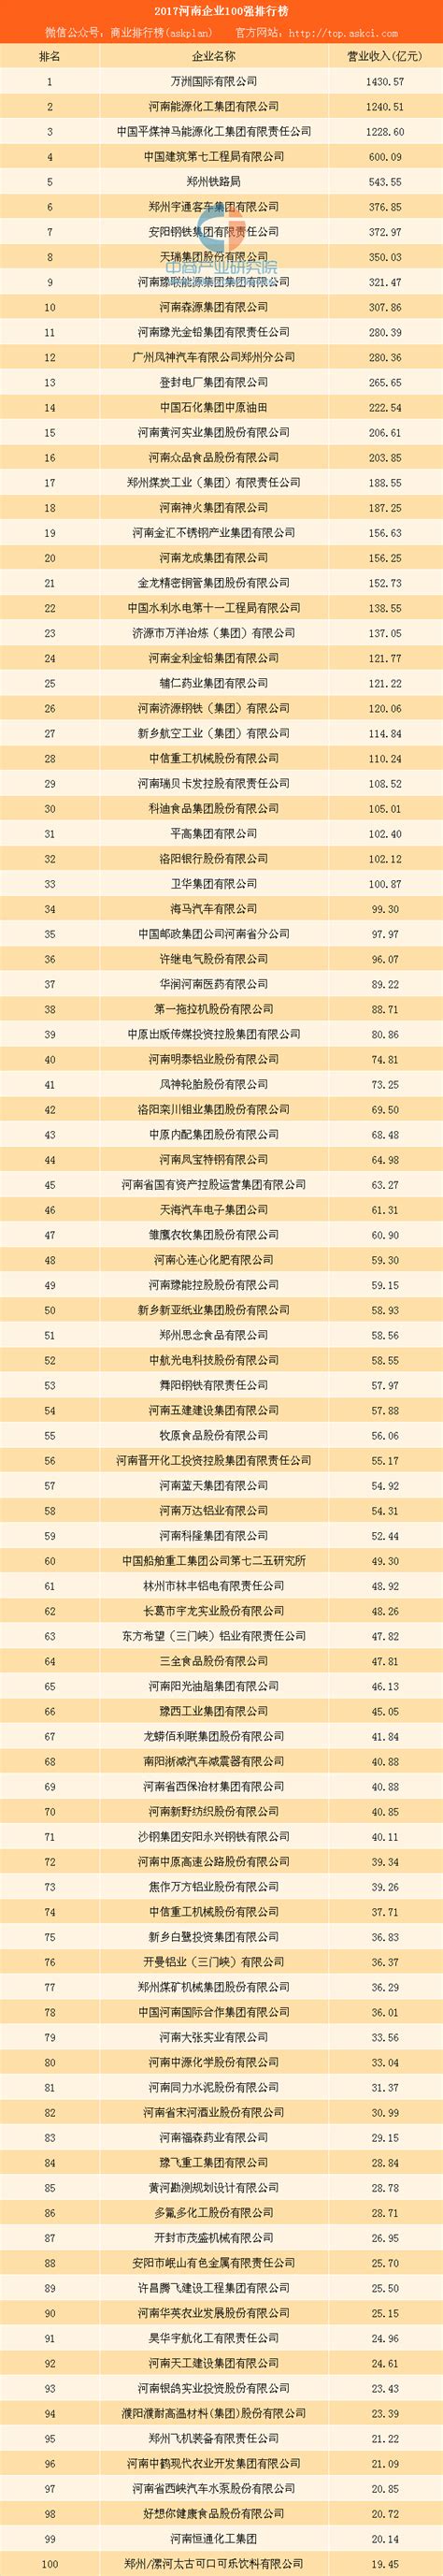 2017河南企业100强排行榜